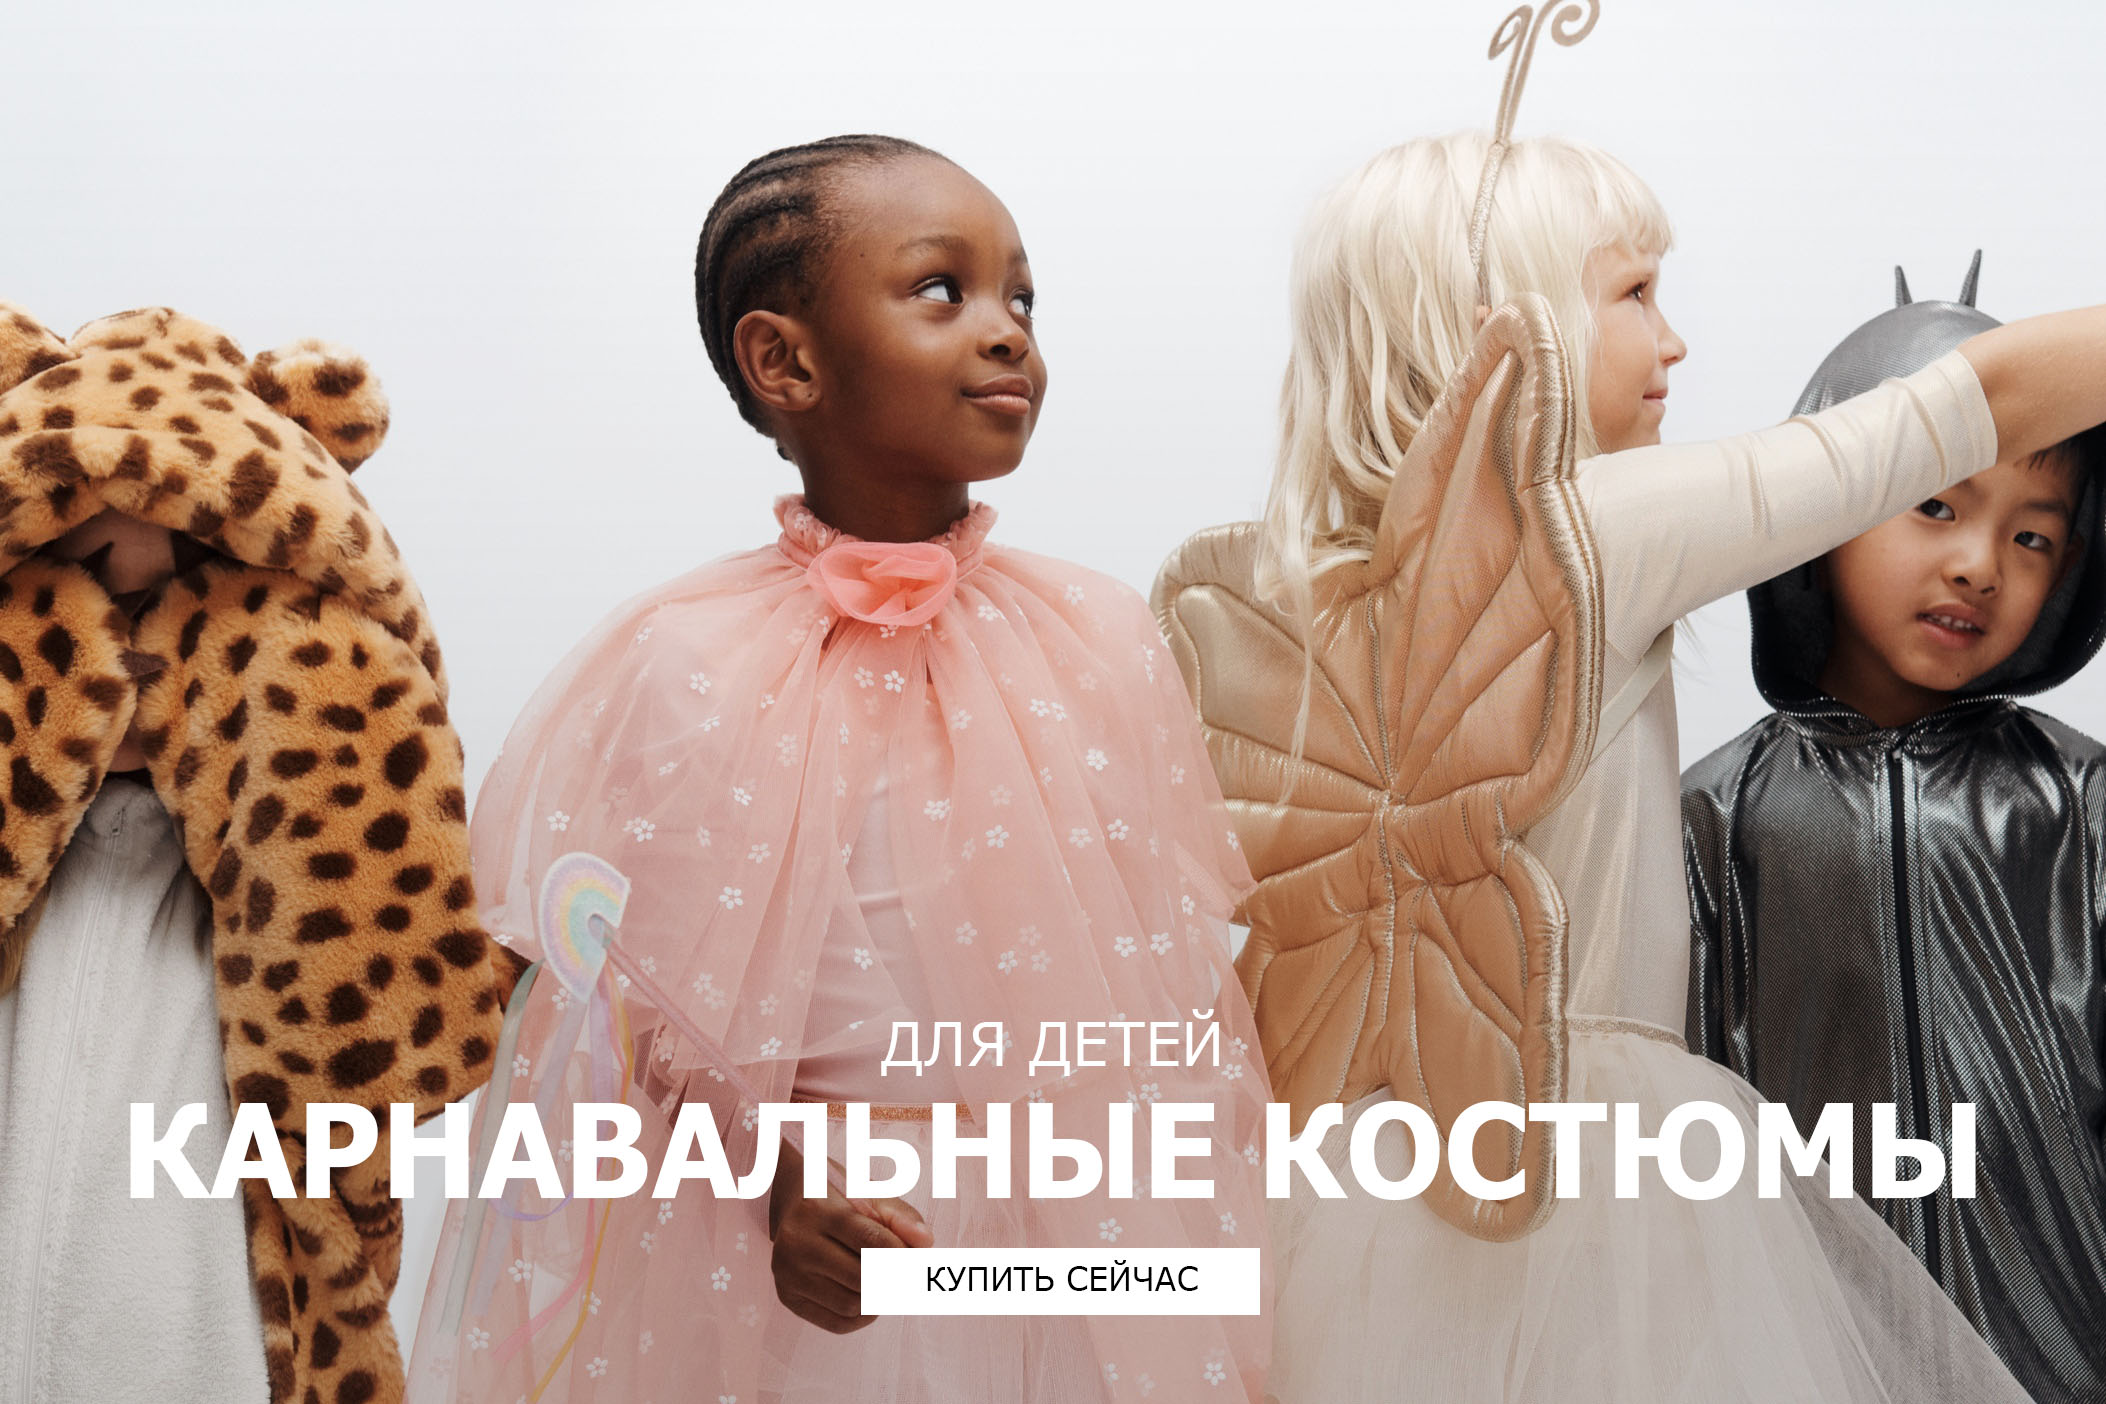 Костюмы для мальчиков, нарядные платья для девочек - Интернет-магазин модной детской одежды Юника